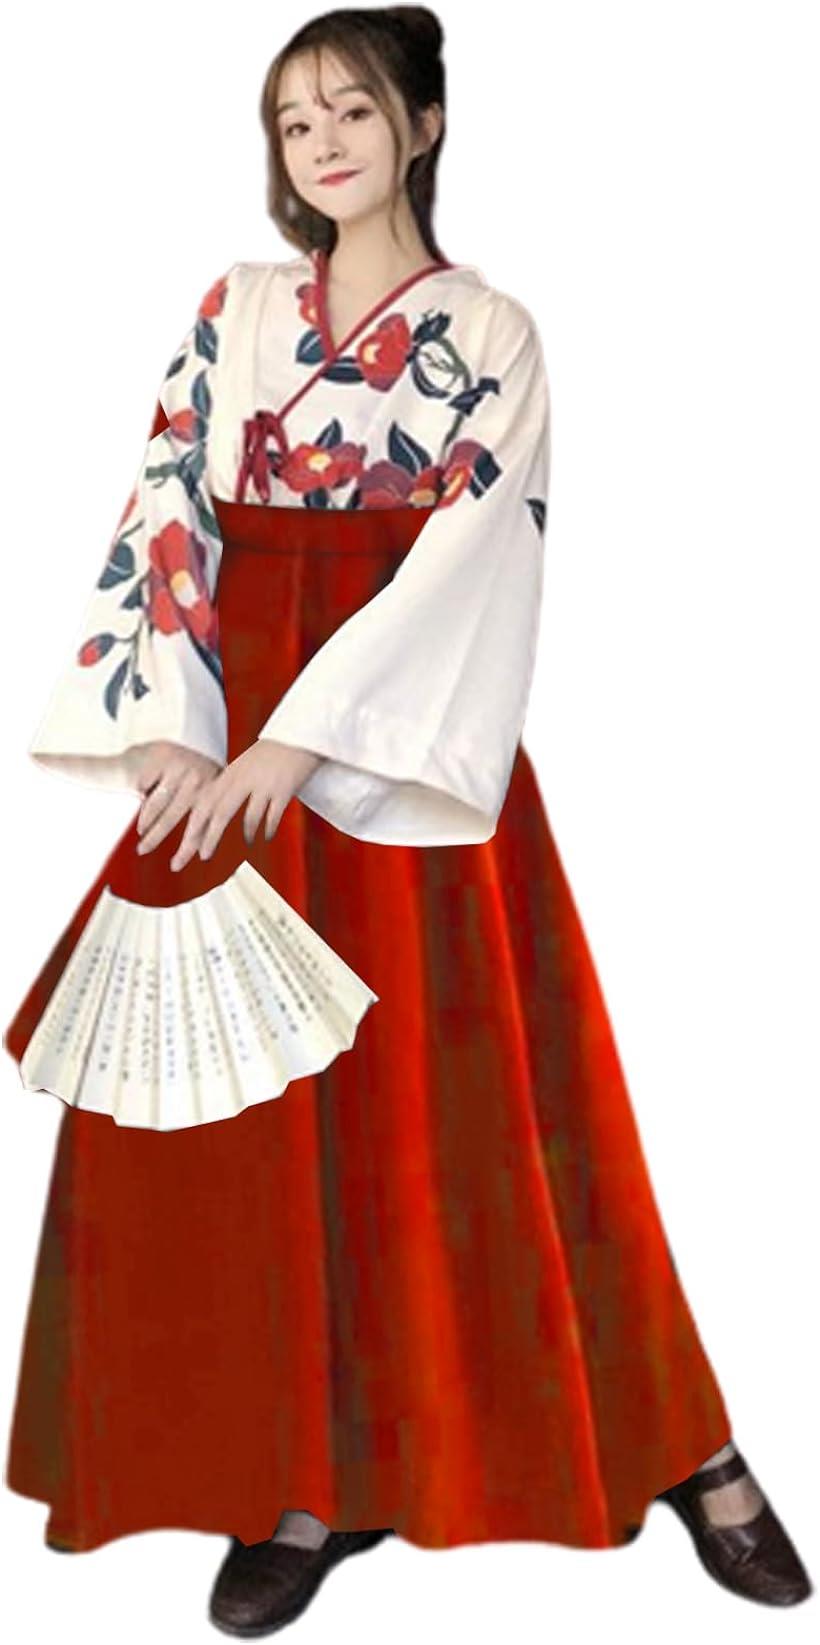 大正ロマン 袴 コスプレ 着物 和装 和服 ロリィタ 文化祭 学園祭 ハロウィン